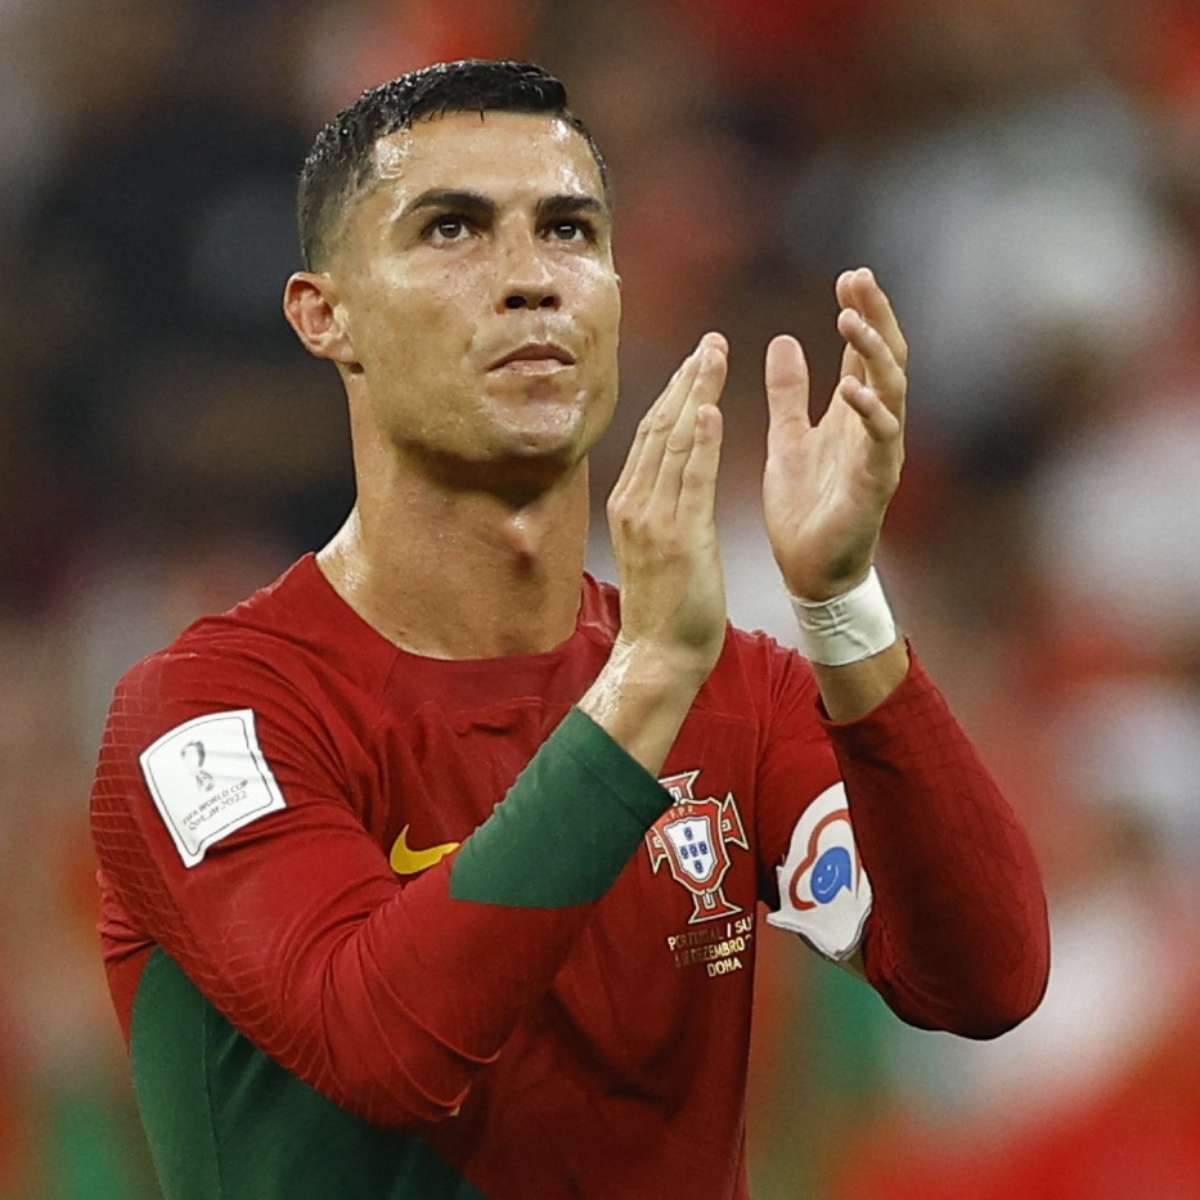 Cristiano Ronaldo recebe proposta de R$ 1,3 bilhão de clube árabe